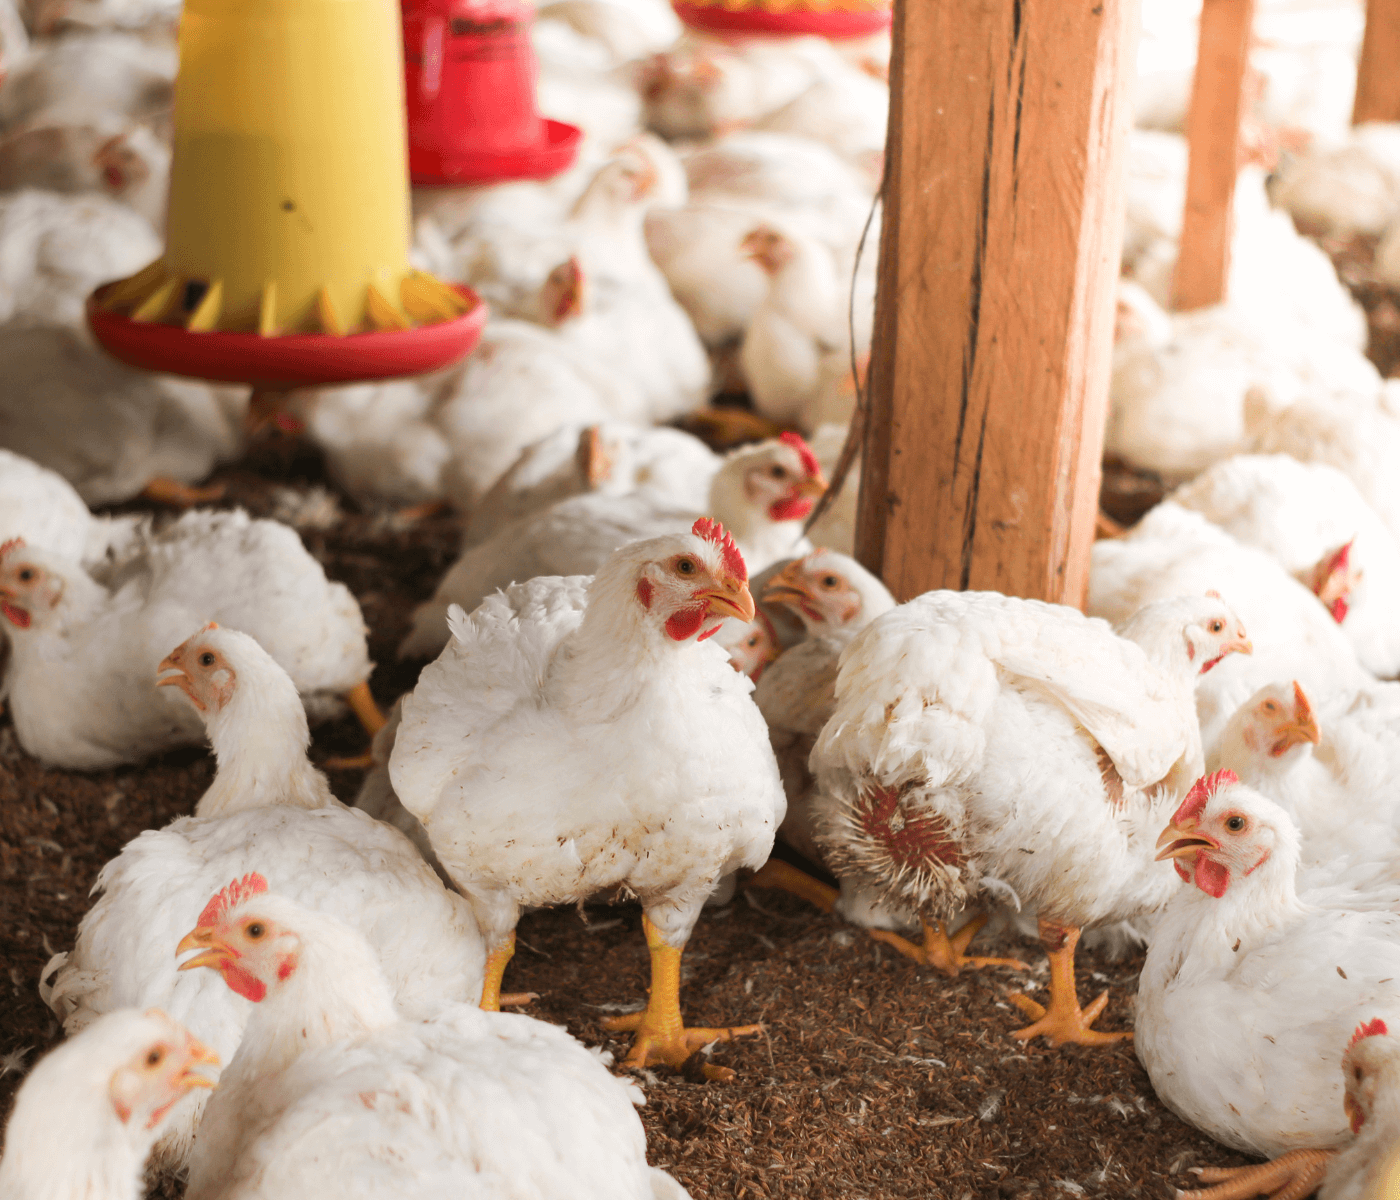 Custos de produção de frangos de corte caem em agosto